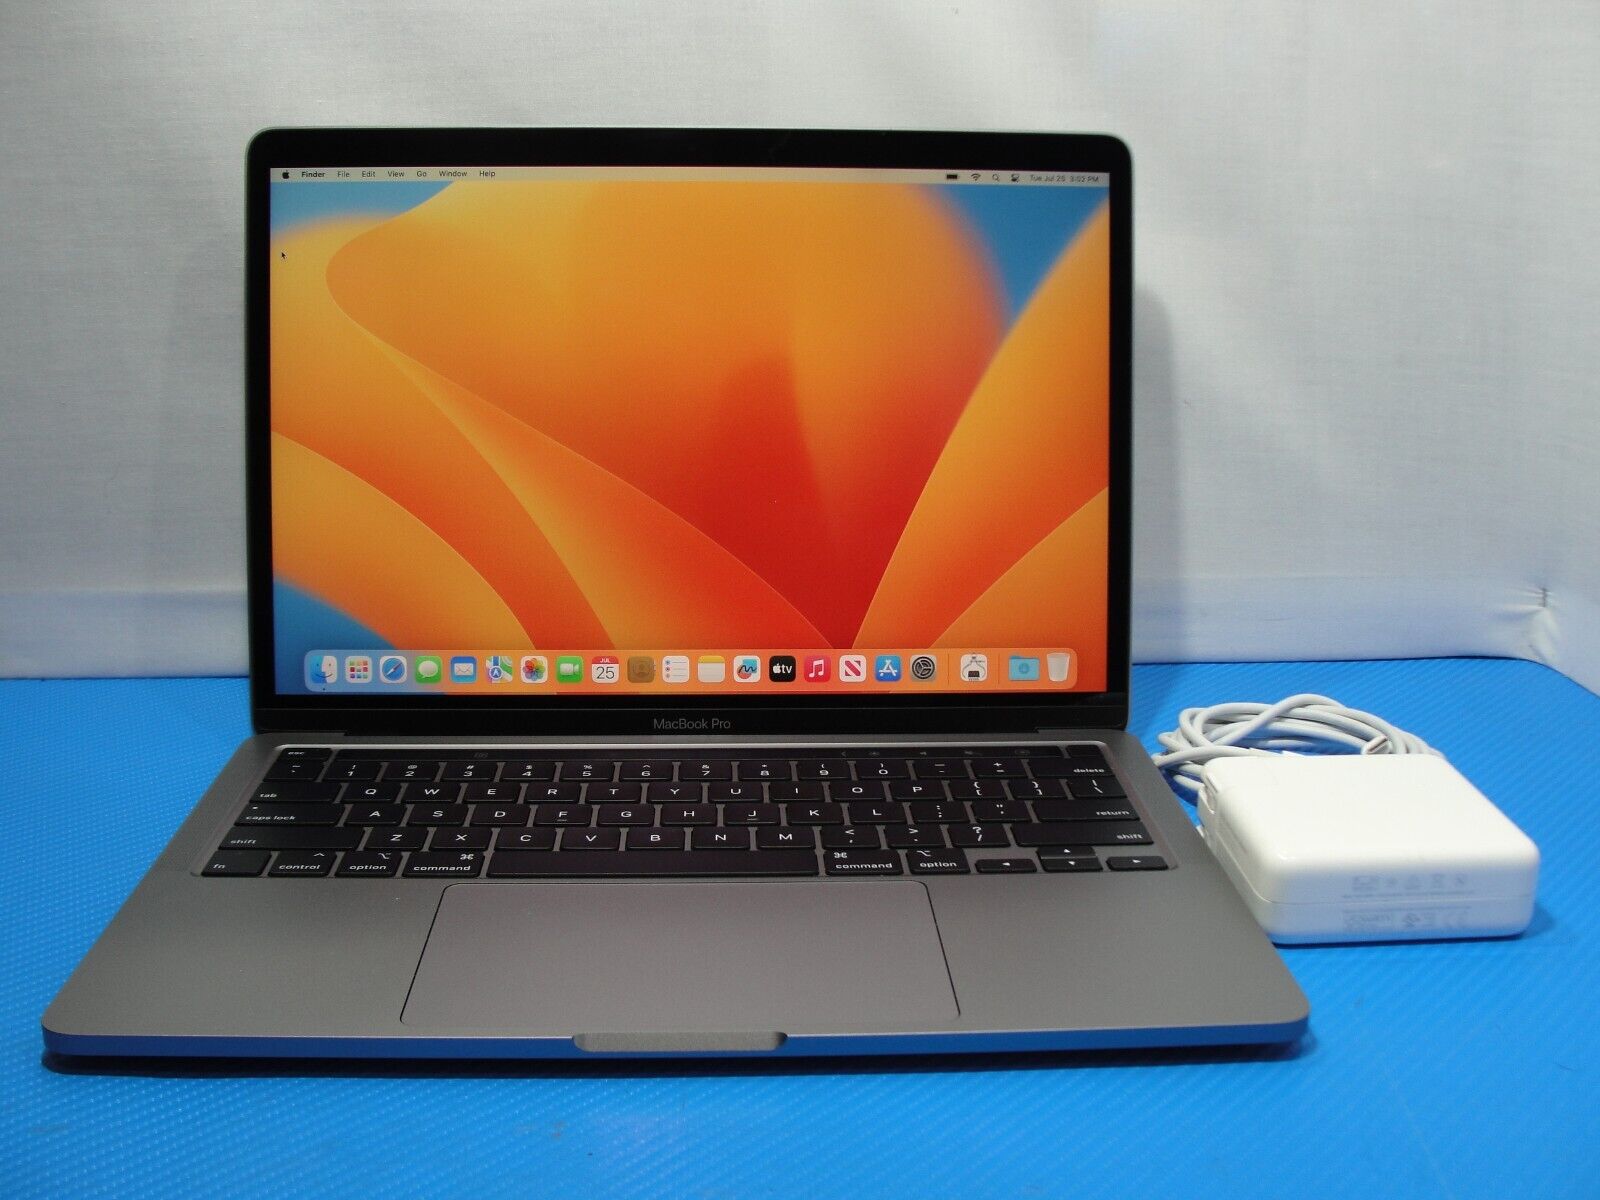 Apple Macbook Pro 